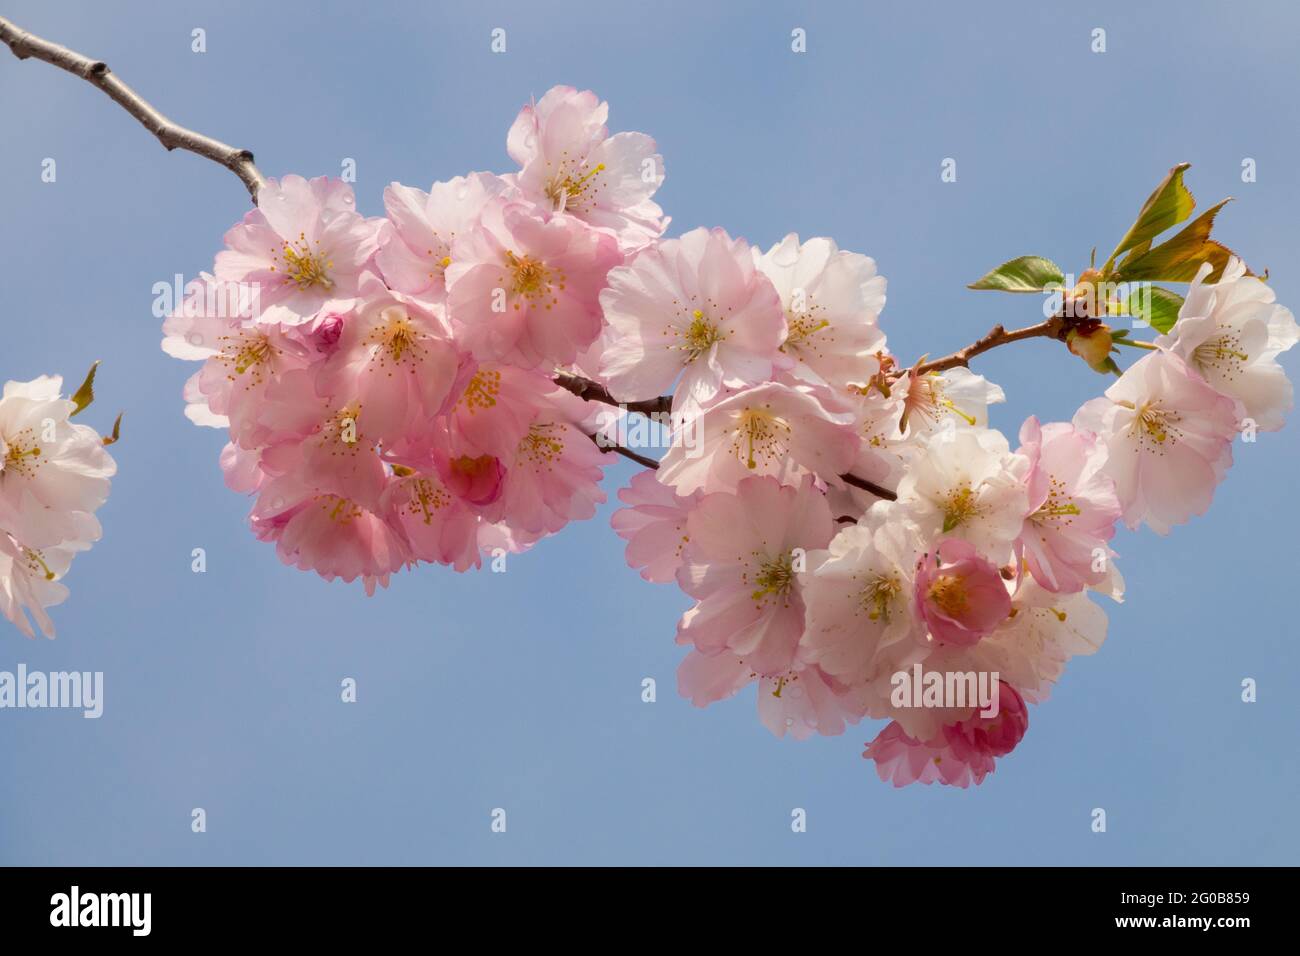 Japanese cherry Tree Blossom Pink prunus Flowers Pink,Japanese Prunus Cherry tree blossom on Branch Blossoms,Blooming Prunus subhirtella Rosebud Stock Photo